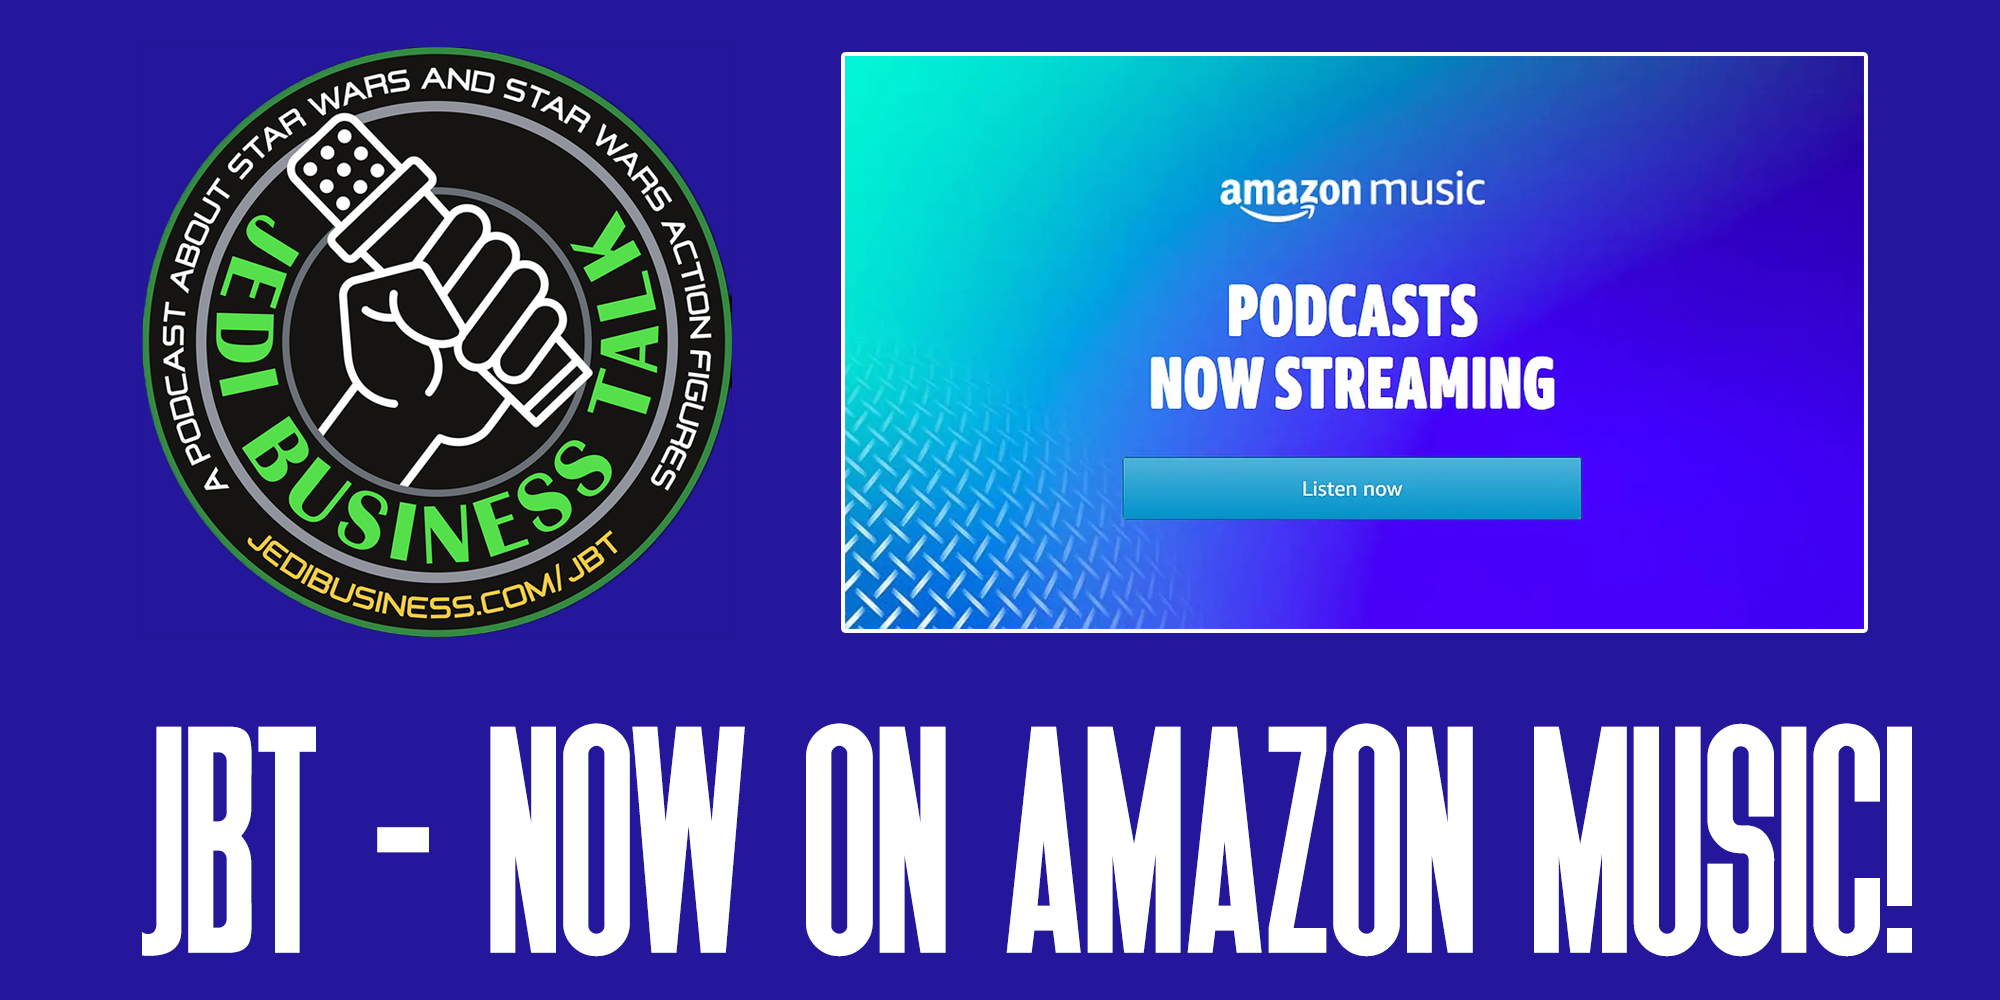 JBT - Now Available On Amazon Music